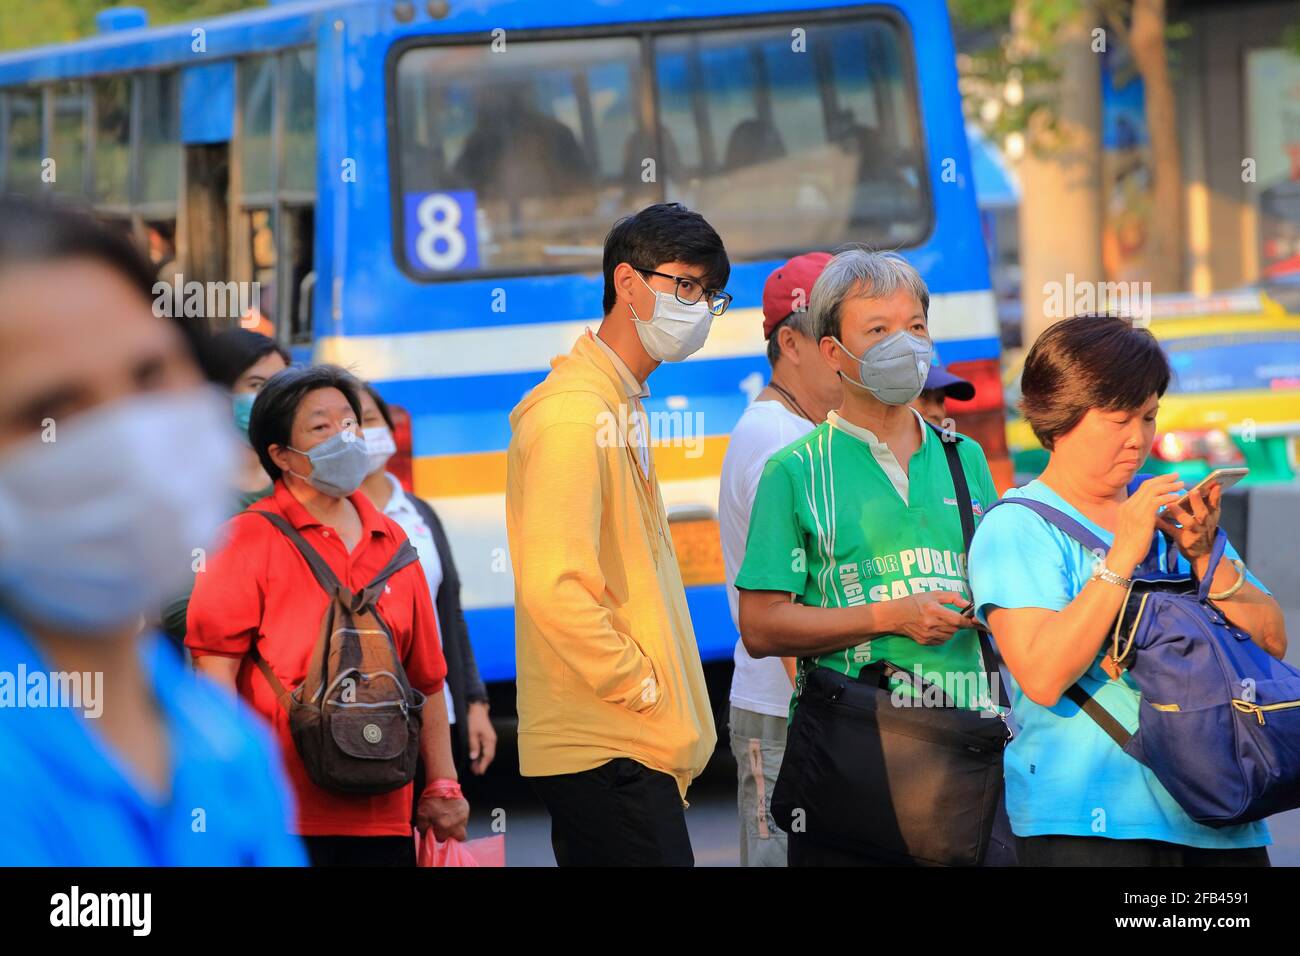 Bangkok - Thailand, 29. Feb 2020: Menschen, die medizinische Masken tragen, um Keime zu verhindern. Das Virus macht die Menschen besorgt. Stockfoto